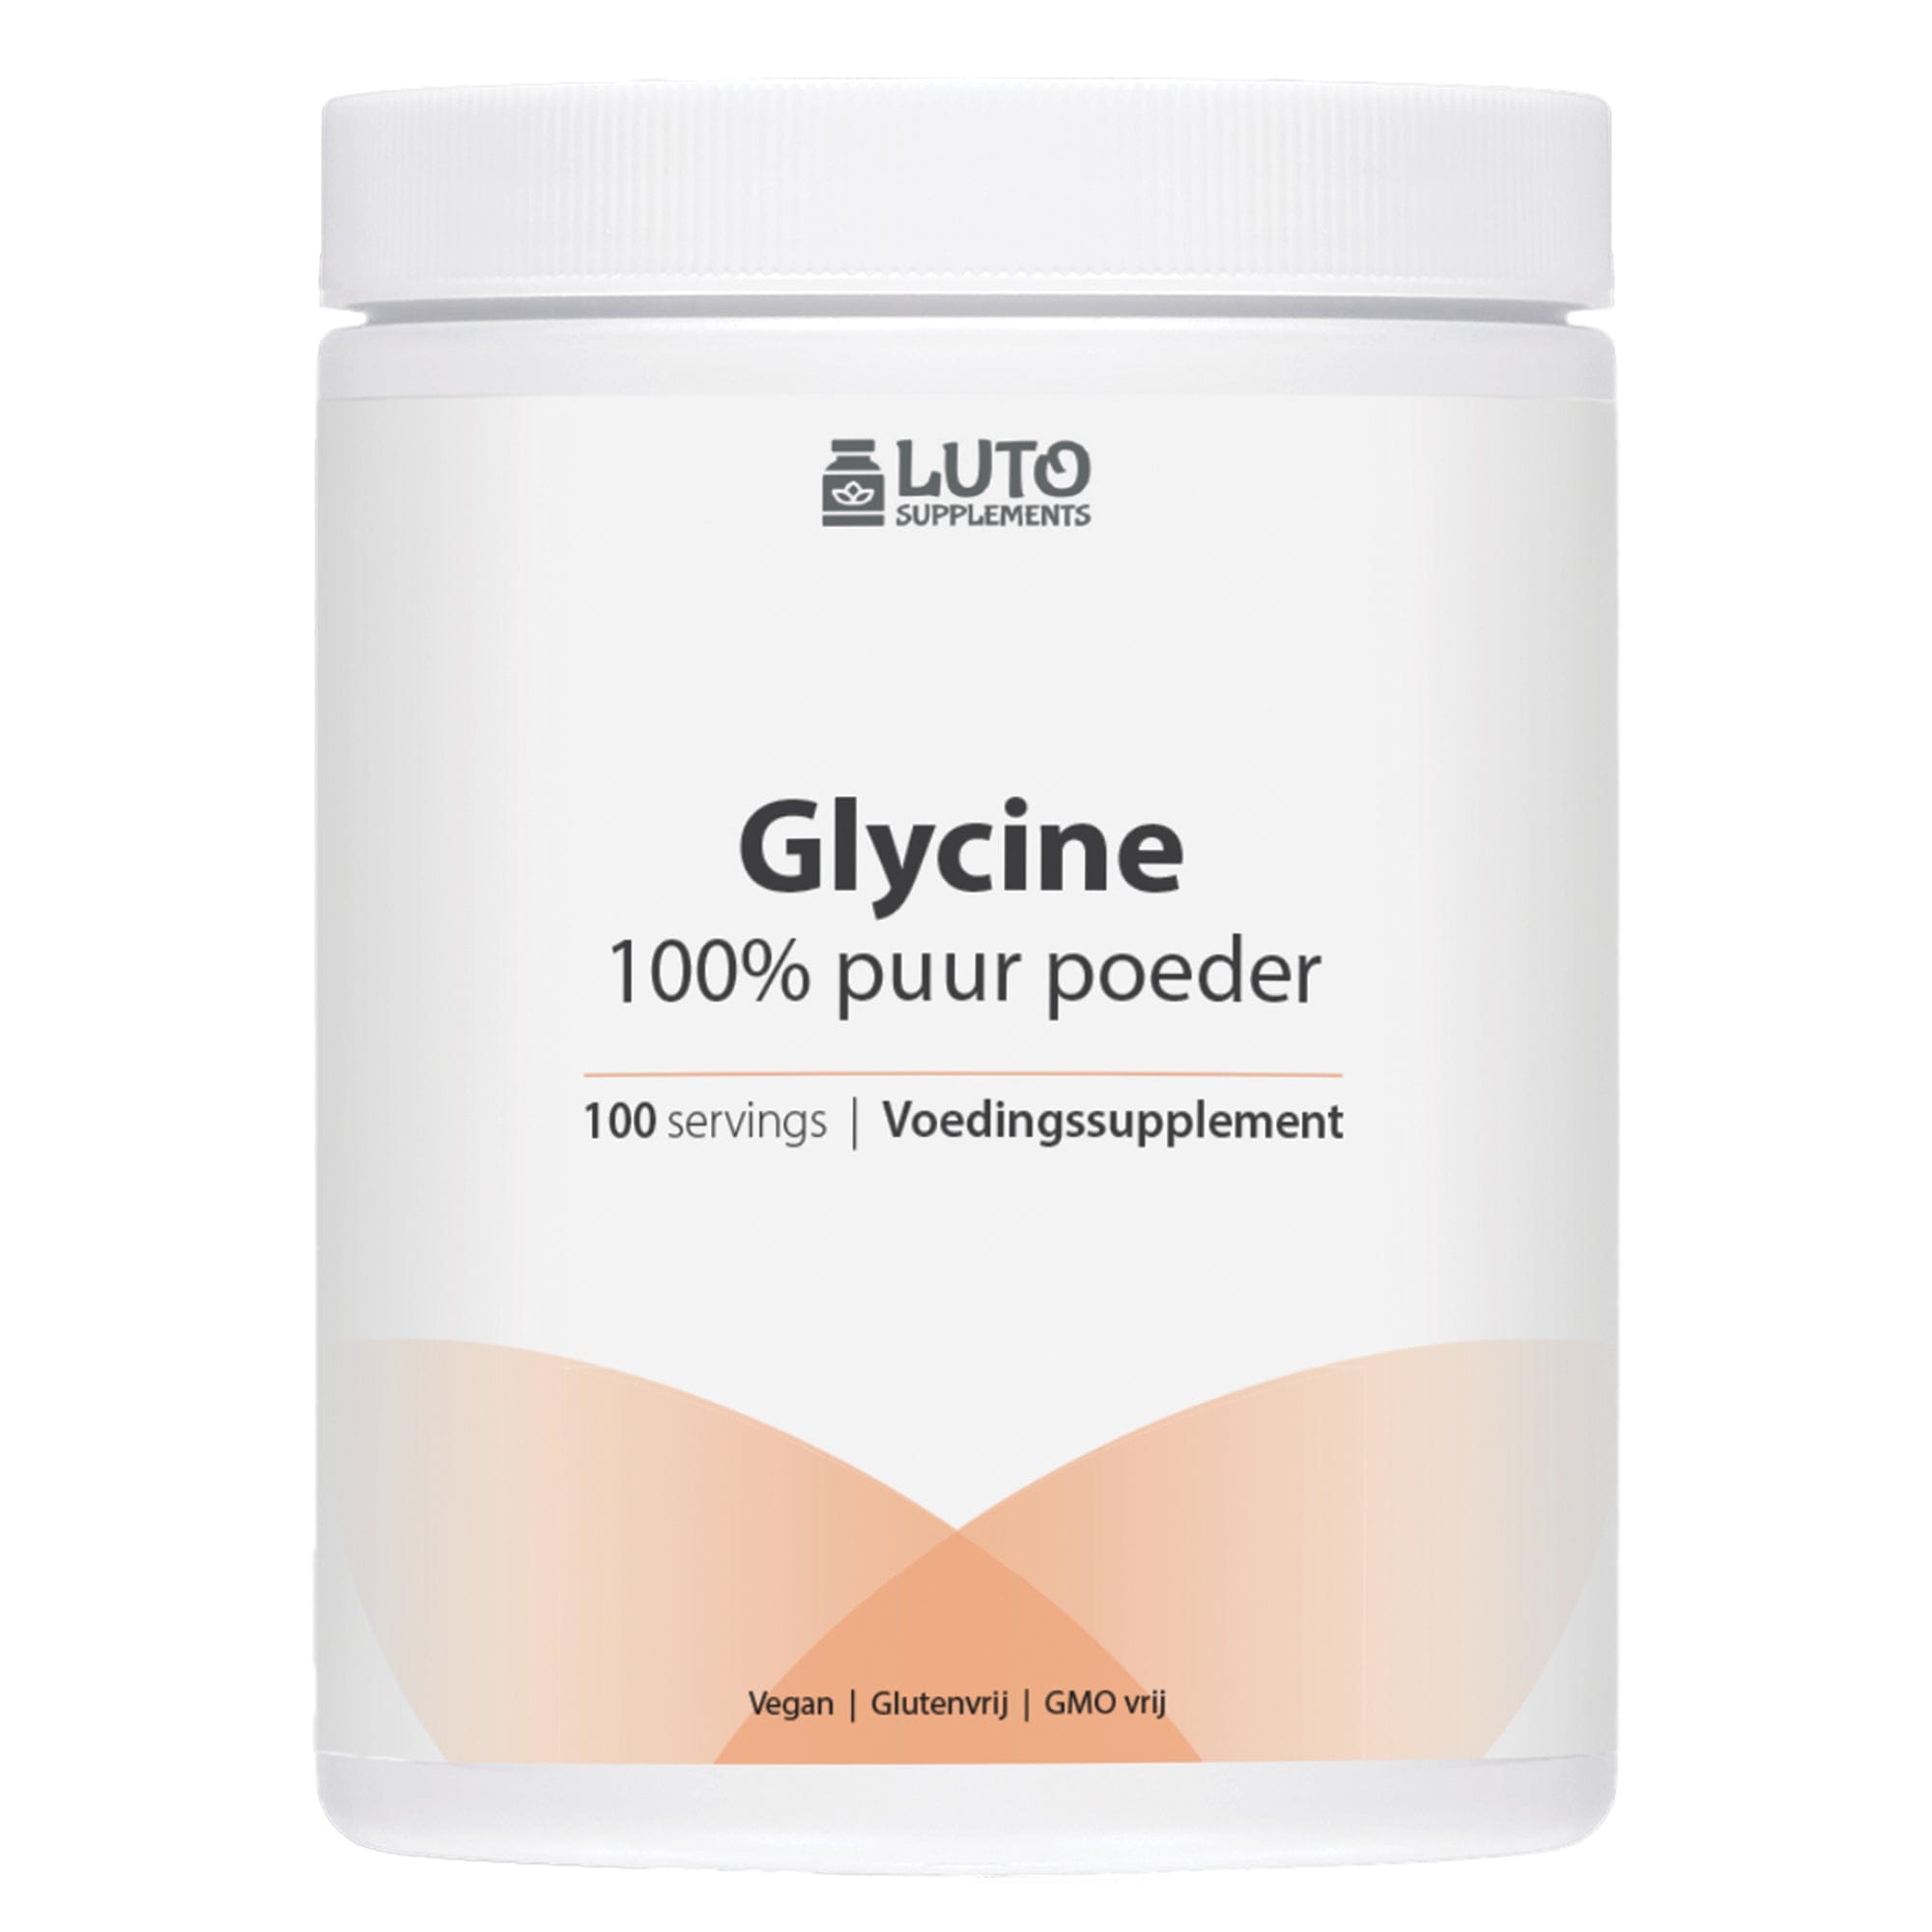 100% glycine poeder zonder toevoegingen